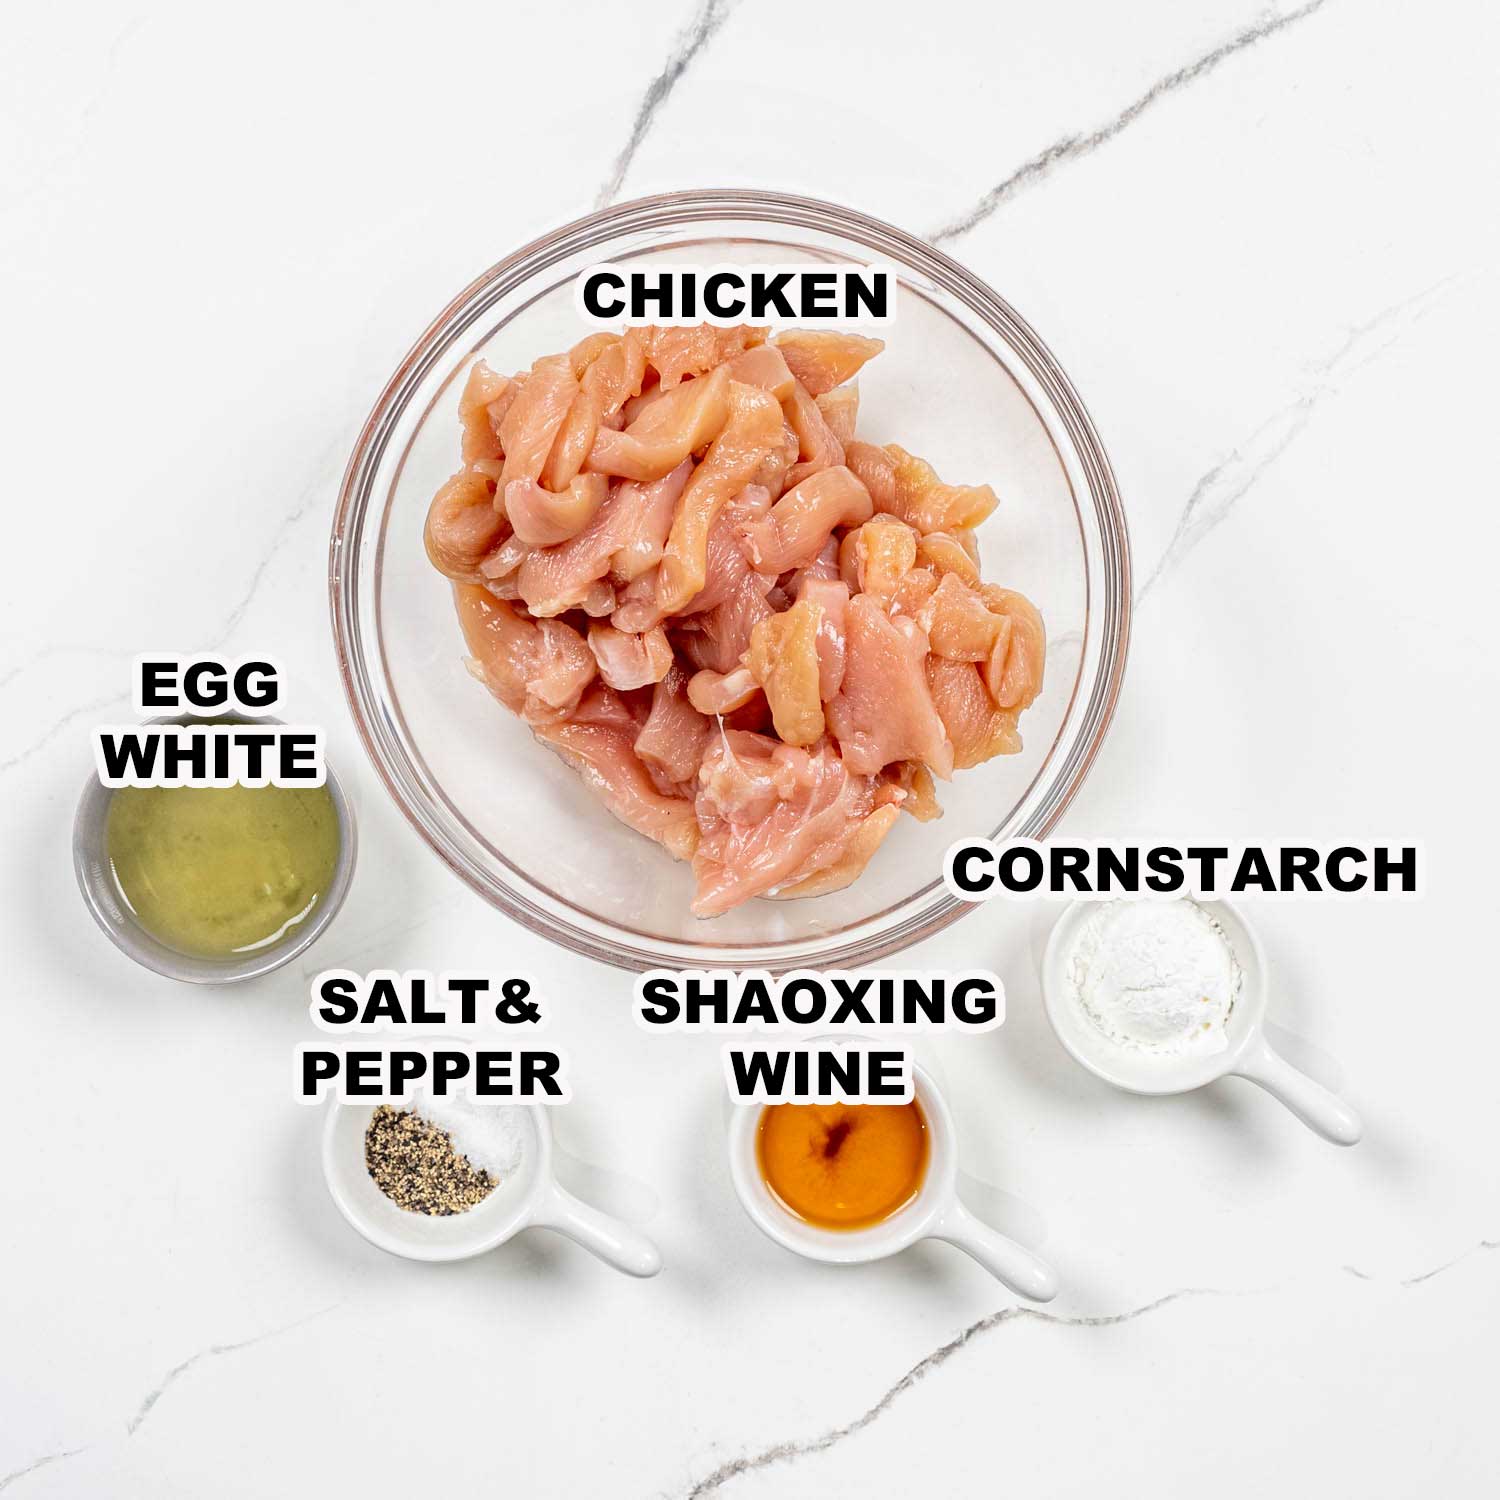 ingredients needed to make chili garlic chicken.